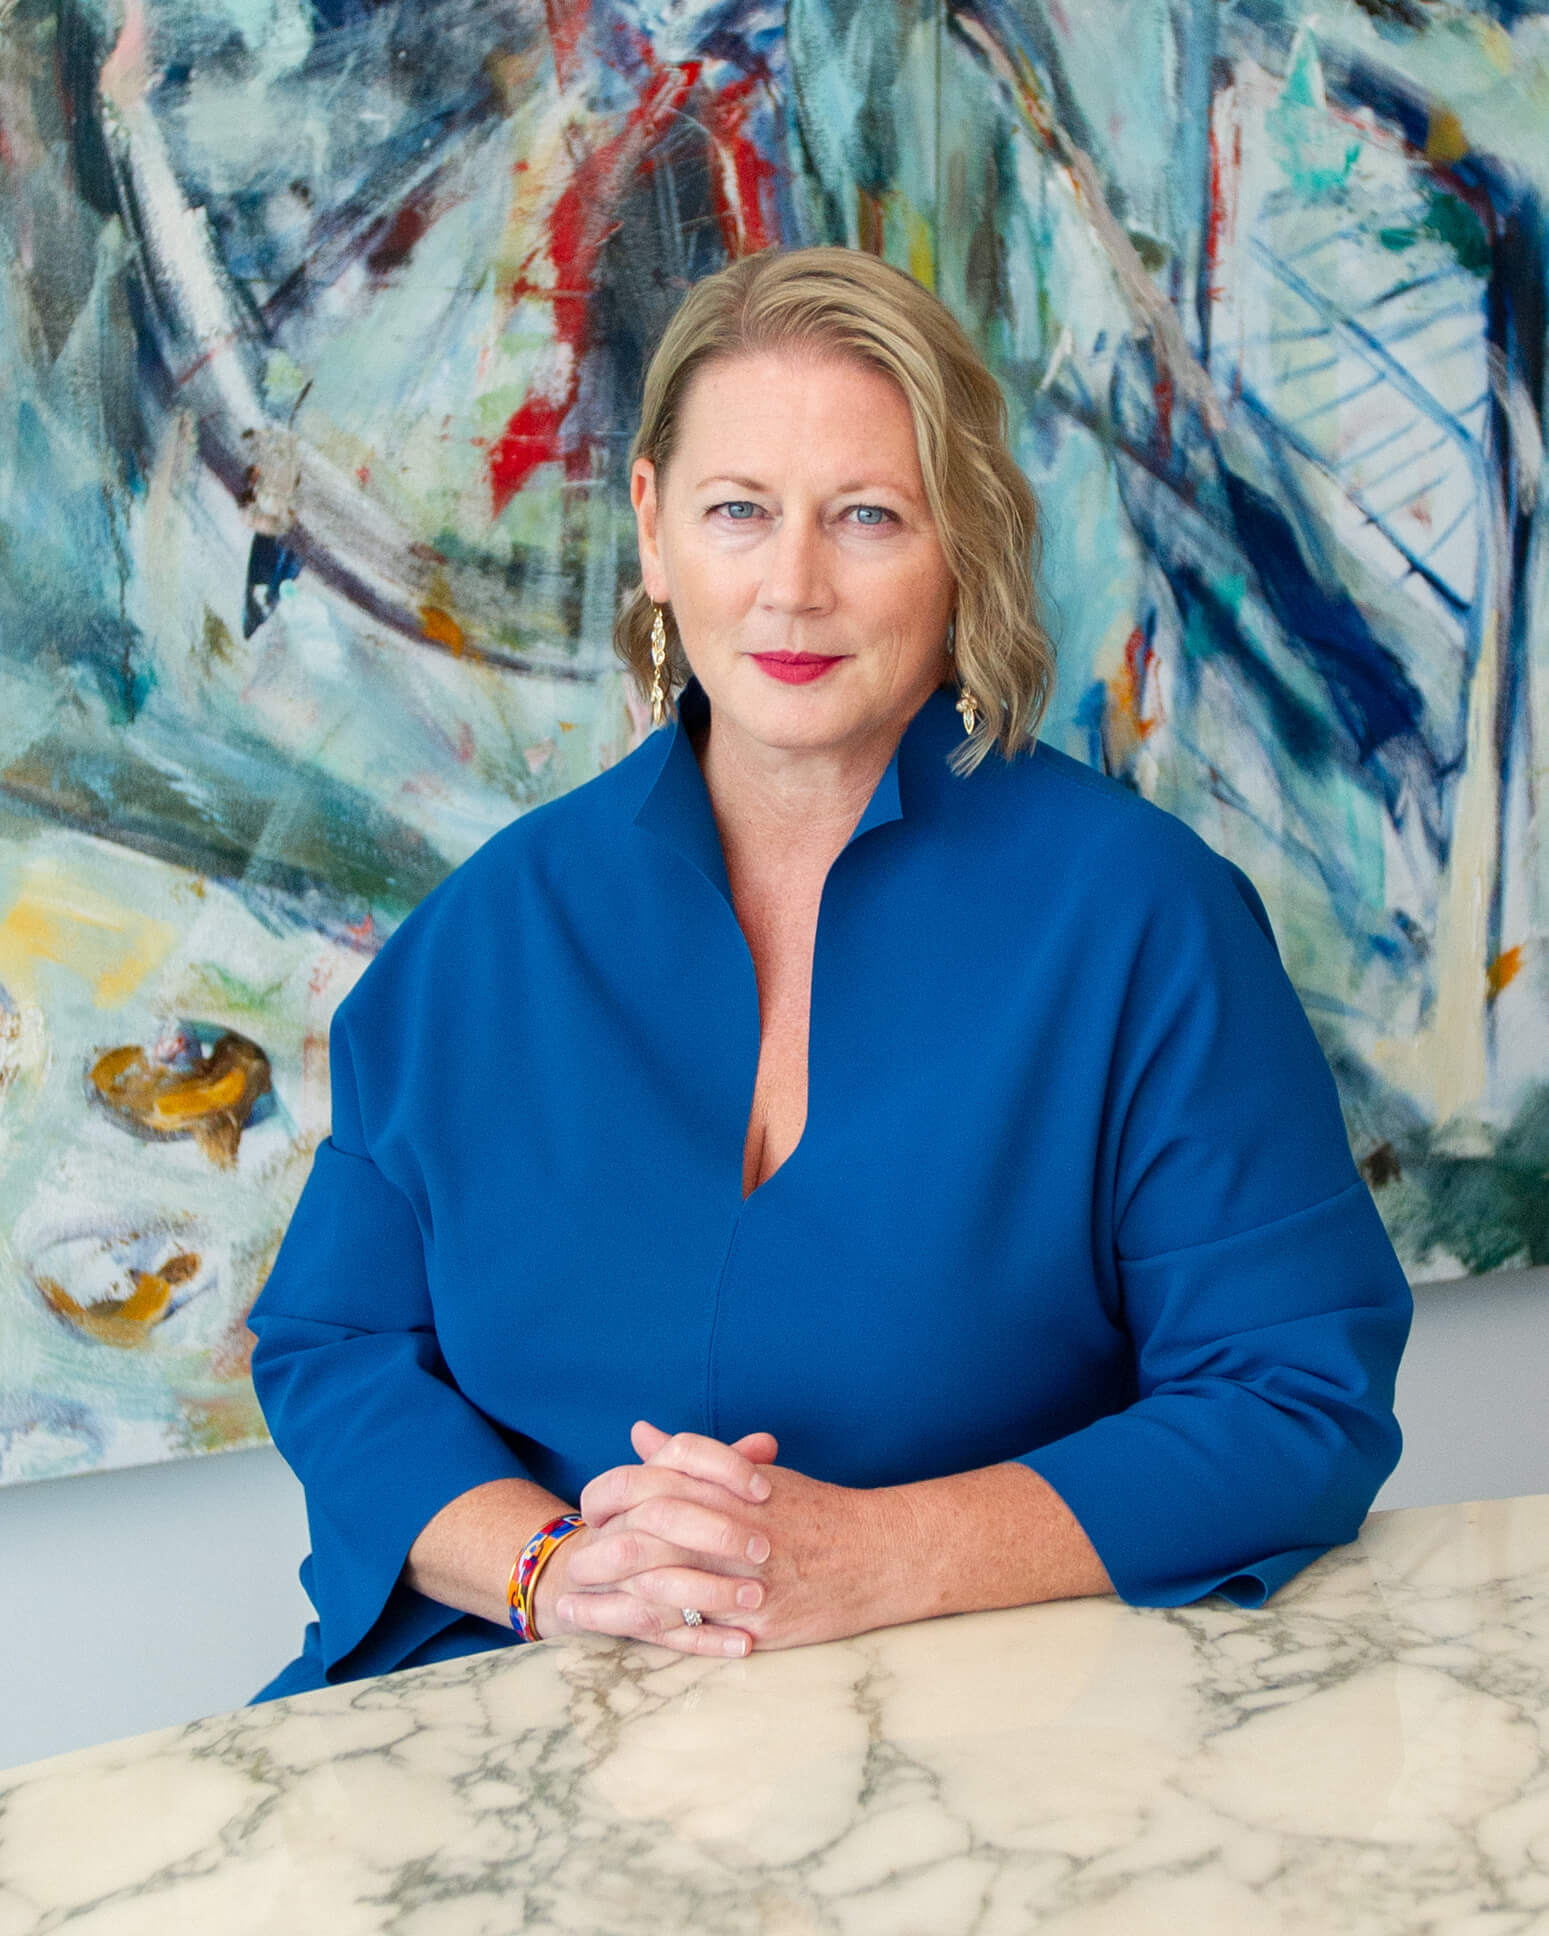 Fotografía de la directora ejecutiva Virginia Devlin. Tiene el pelo rubio hasta los hombros, ojos azules y lleva un top azul. Está sentada frente a una pared con motivos brillantes.